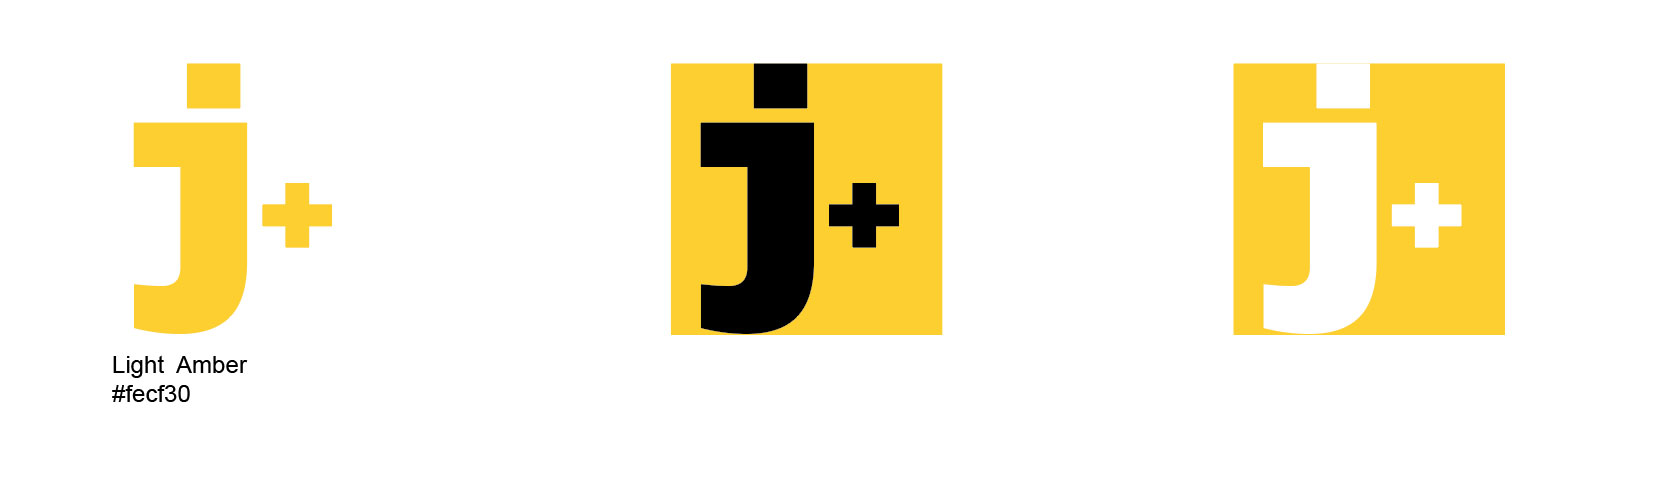 juantxocruz.com logo, versiones de color.